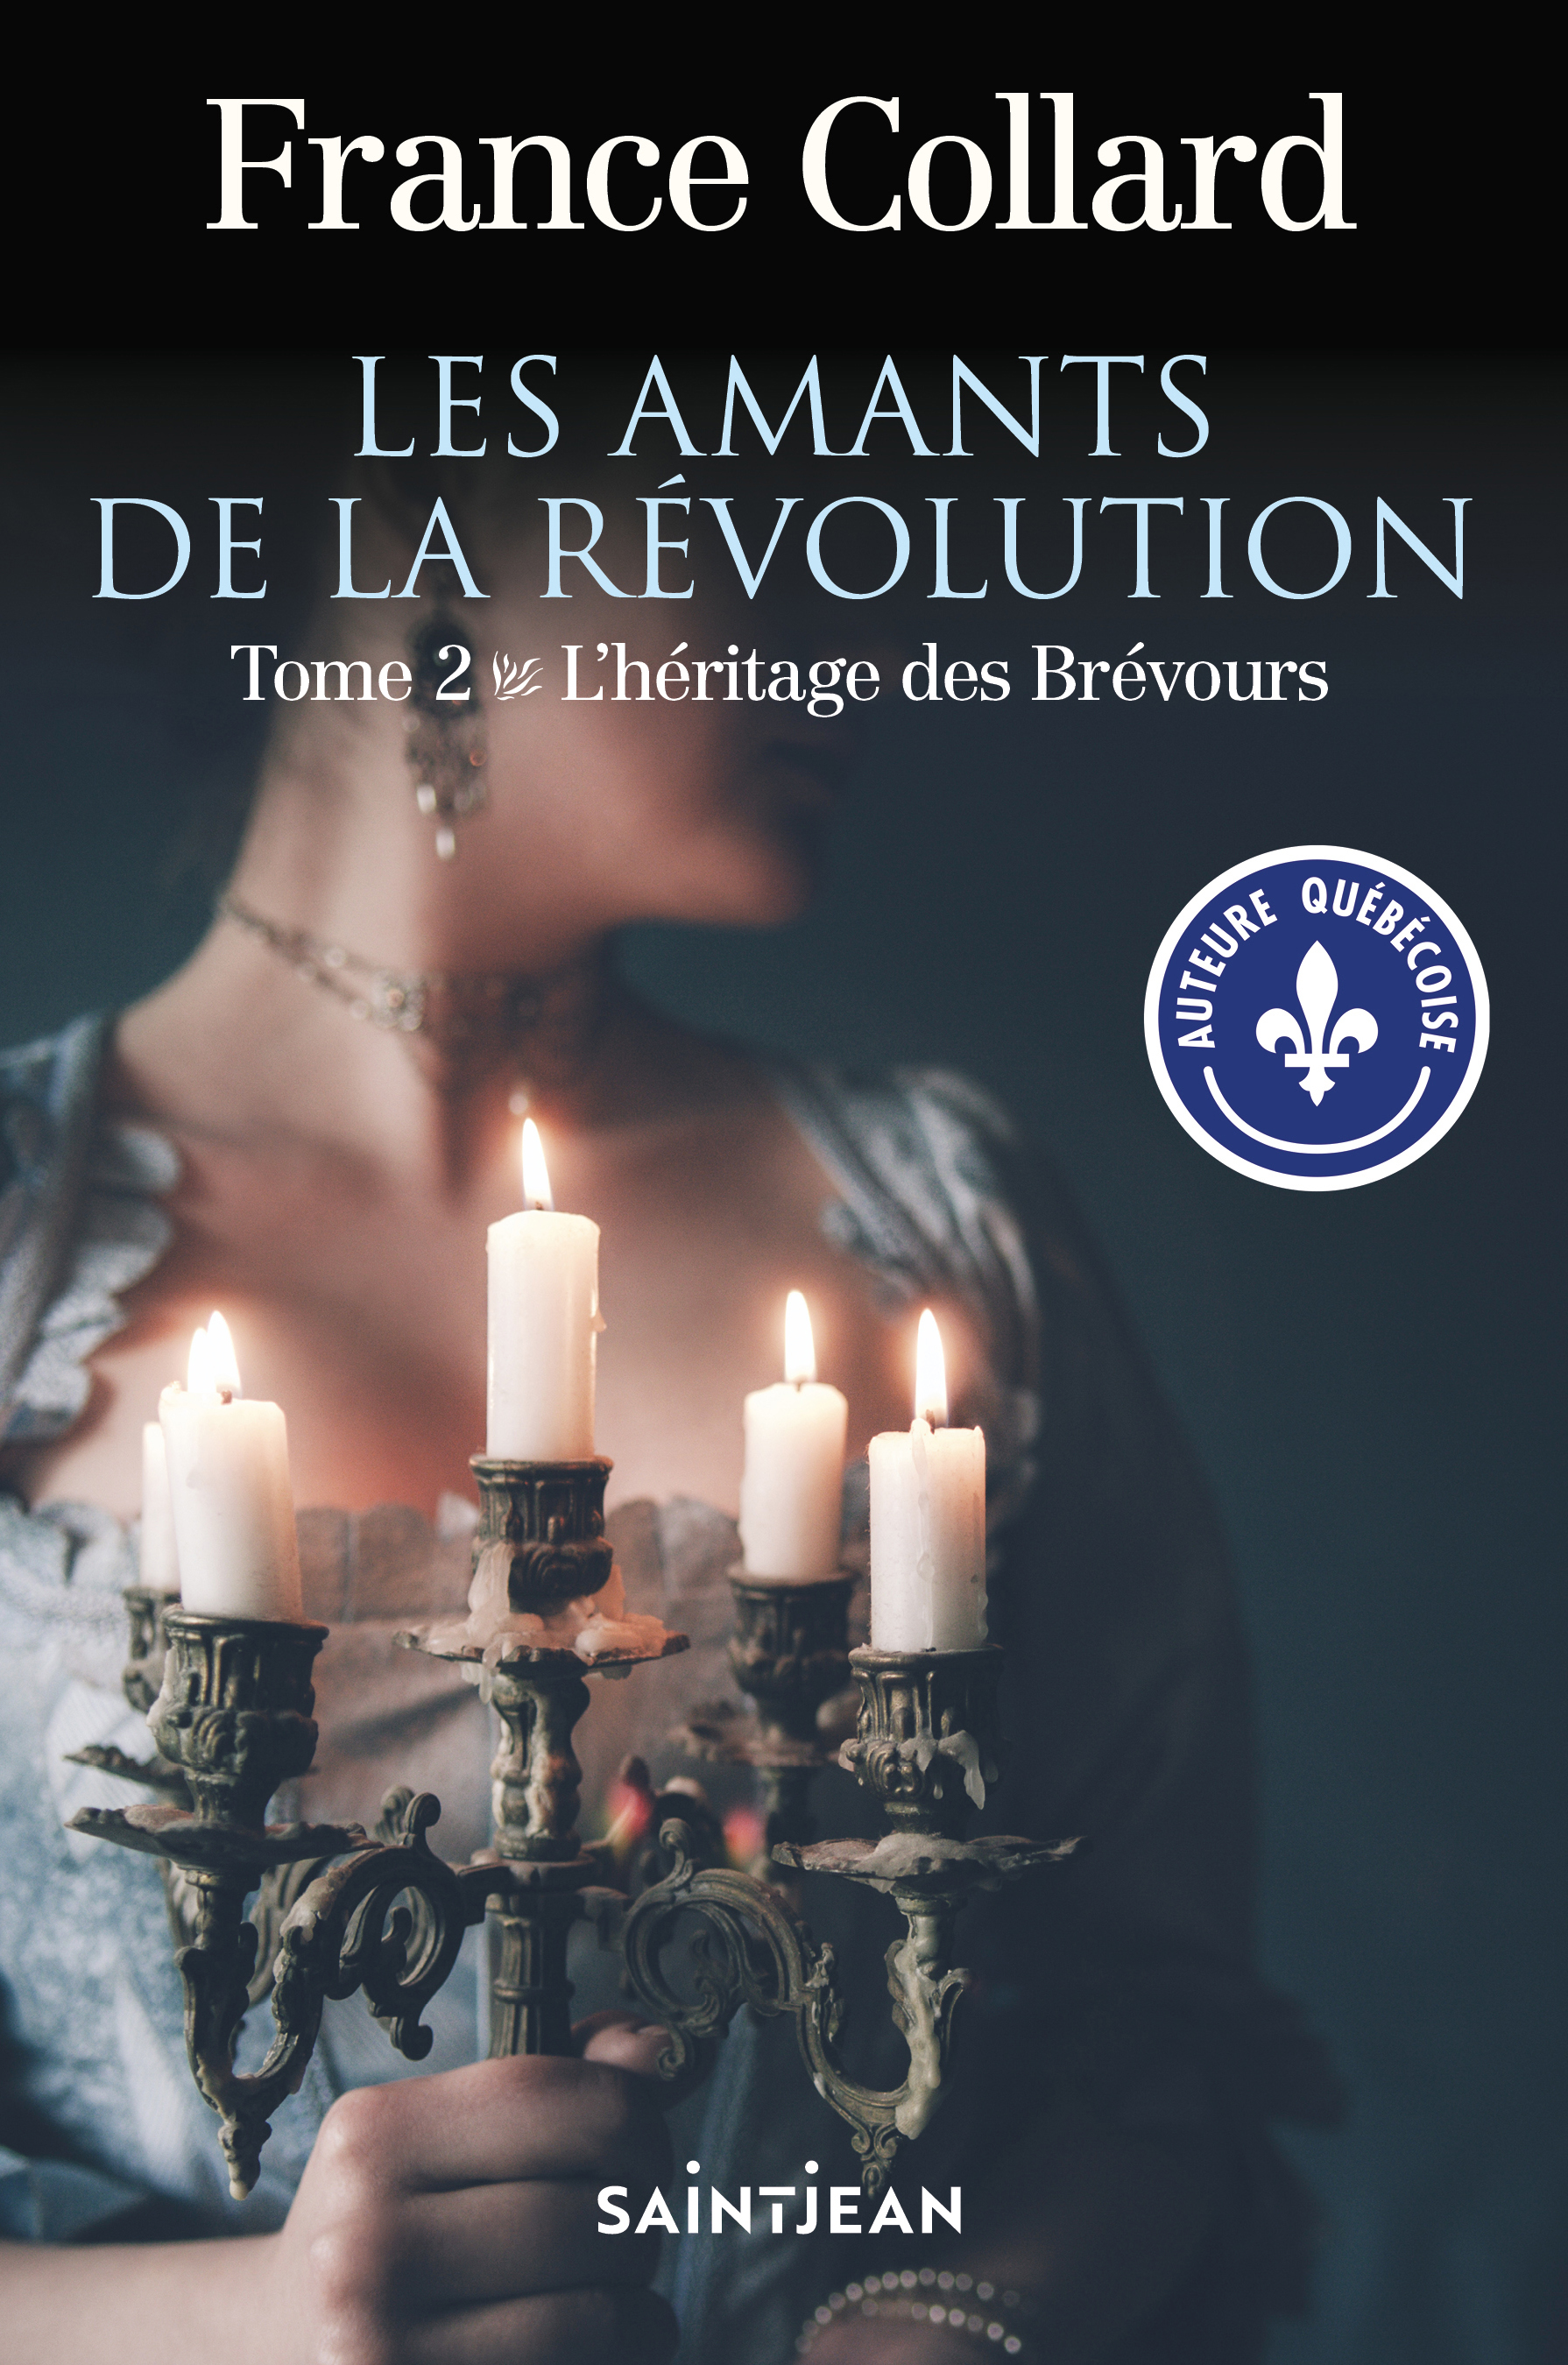 Les amants de la révolution, tome 2 – Saint-Jean Éditeur